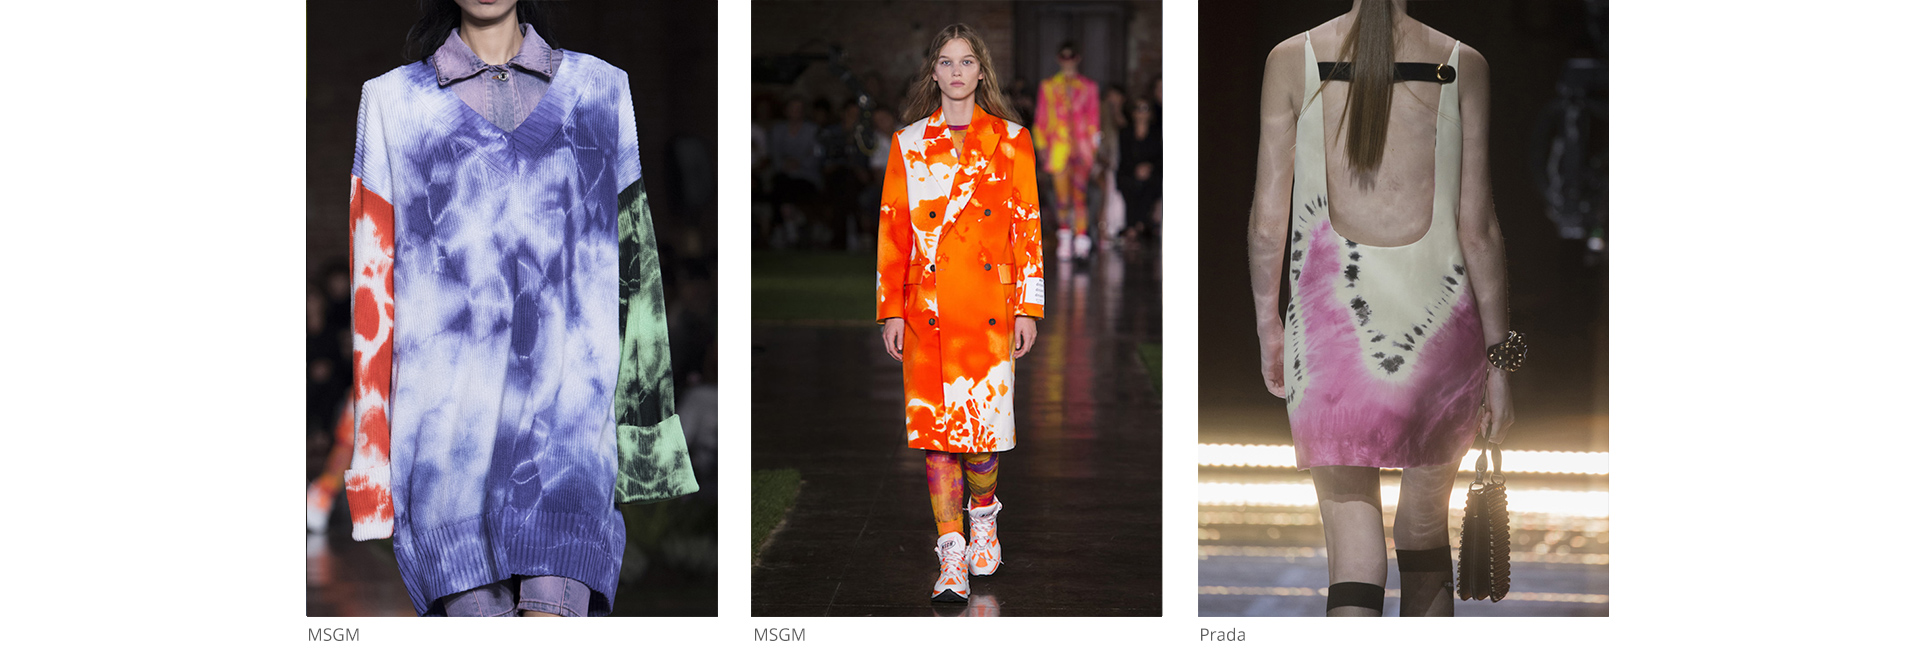 Миланаас ирсэн шинэхэн тренд: Tie-dye эффекттэй хувцаснууд (фото 4)